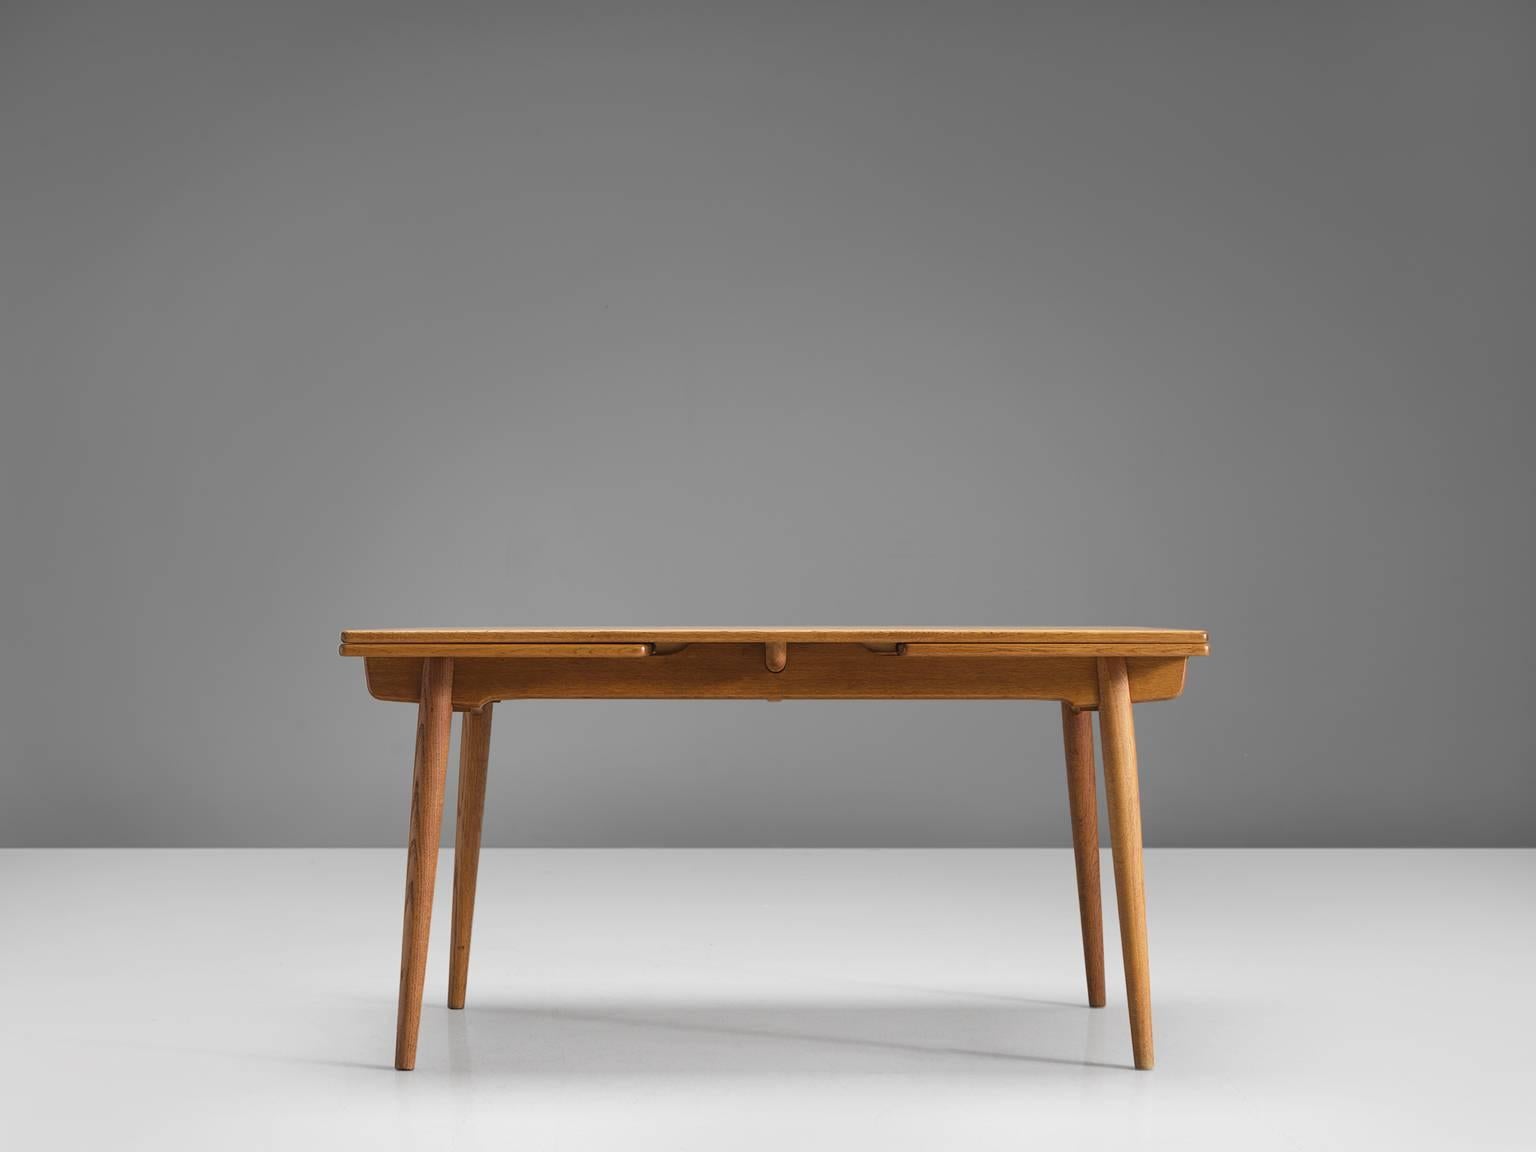 Danish Hans Wegner Extendable Table for Andreas Tuck in Teak and Oak